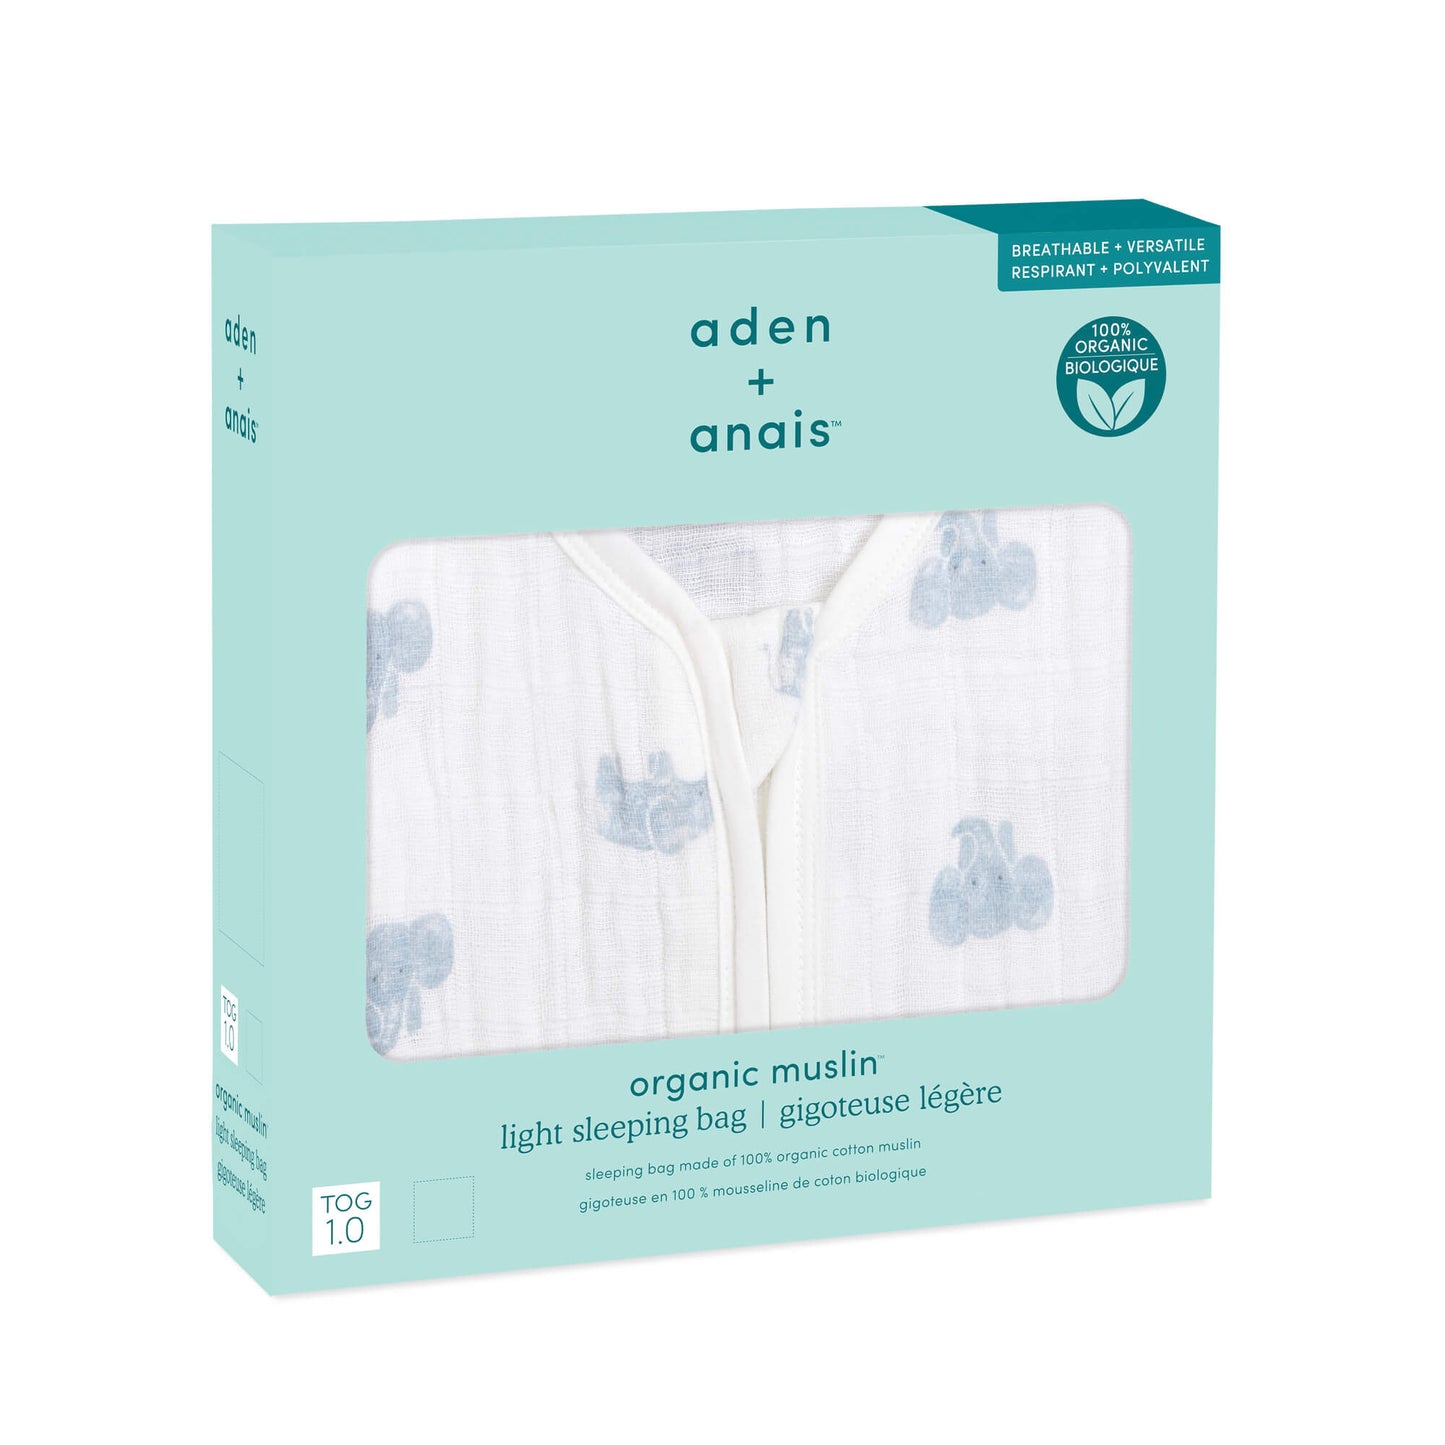 aden + anais Organic Cotton Light Sleeping Bag - 1.0 Tog (Animal Kingdom)